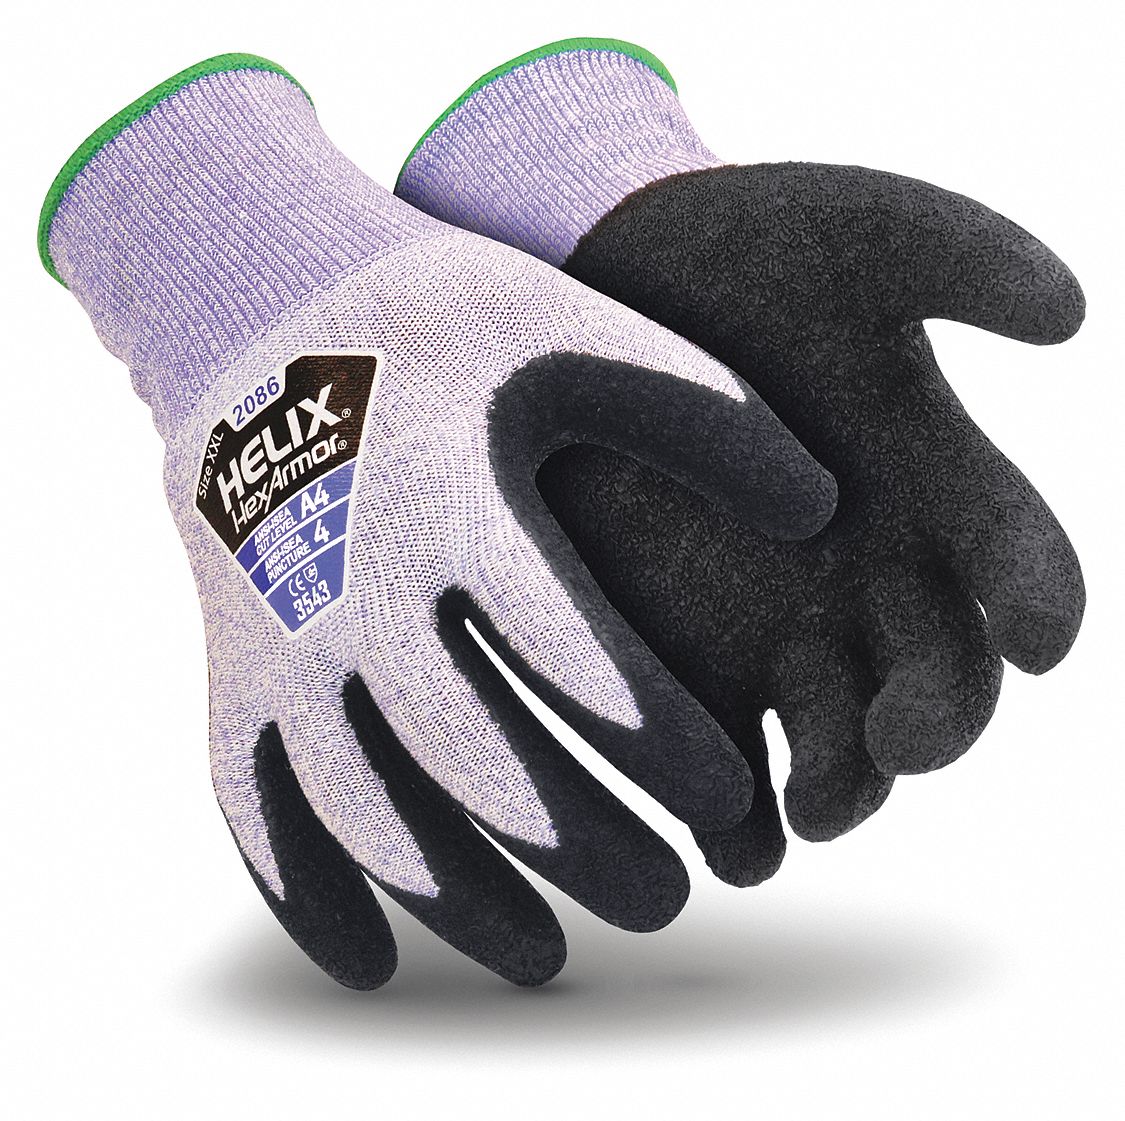 HEXARMOR Coated Gloves, 1 PR - 54WH96|2086-XL (10) - Grainger